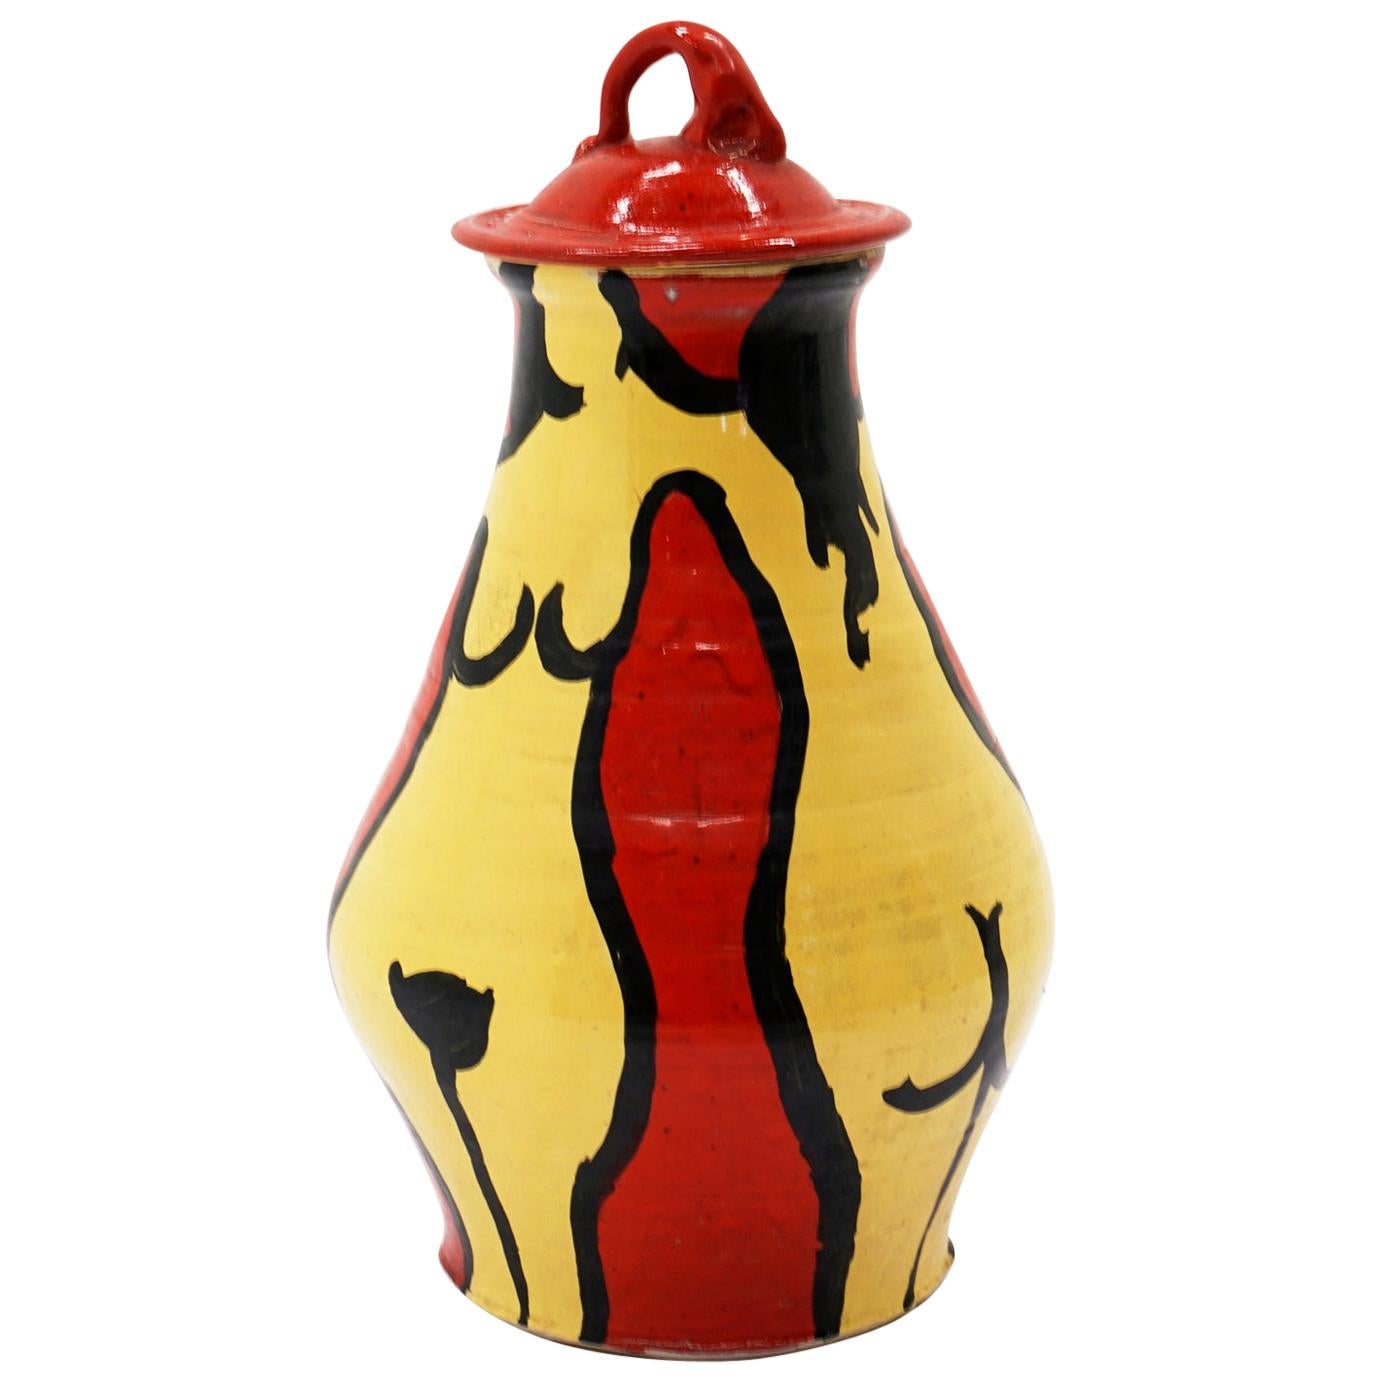 Vase mit Deckel aus Kunstkeramik von Ken Ferguson, signiert